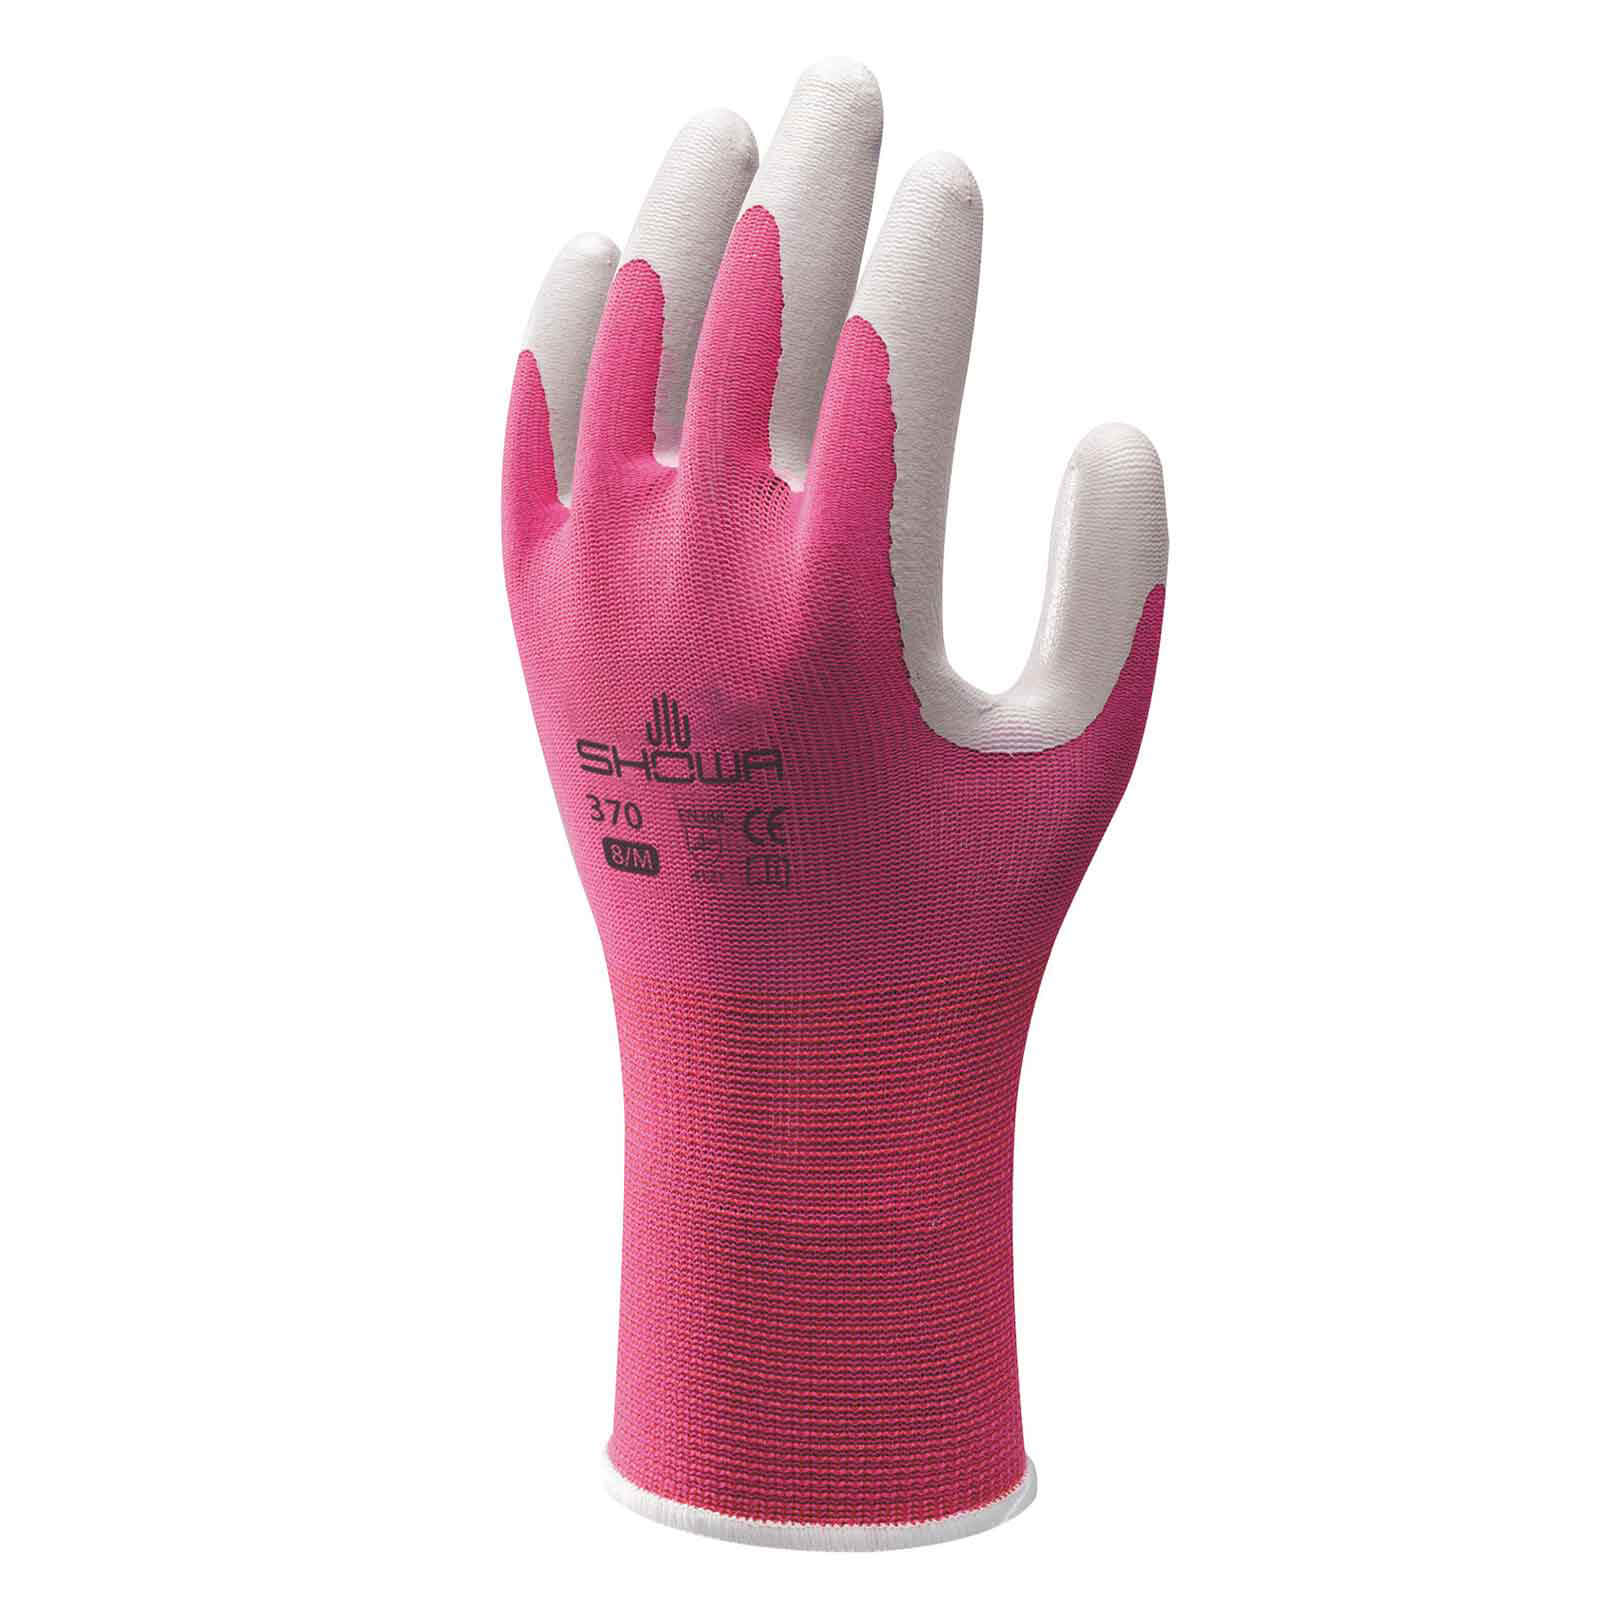 Image of Kew Gardens Multi Purpose Nitrile Coated Gardening Gloves Pink M